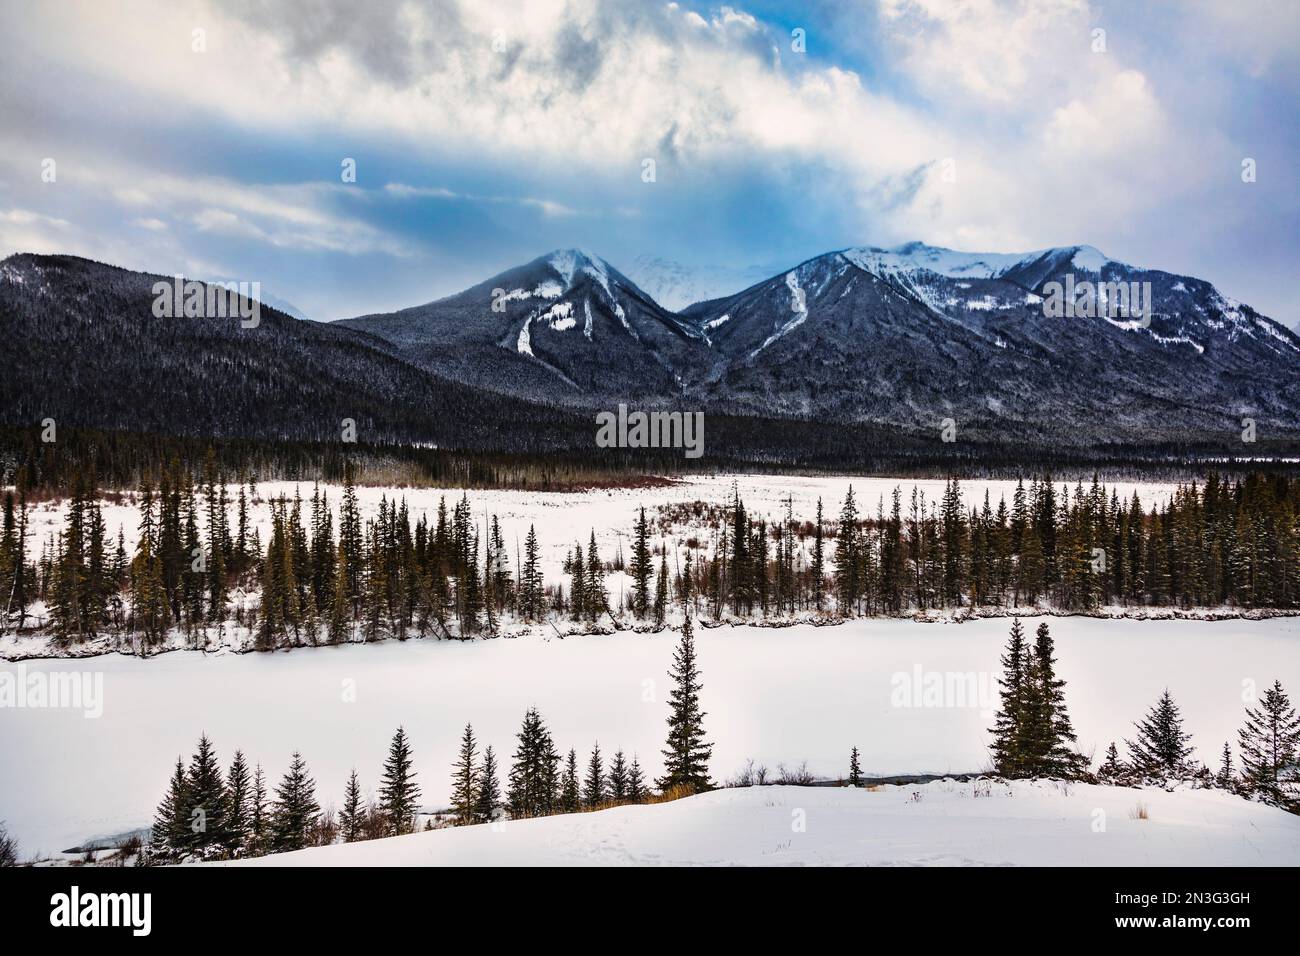 Vue des montagnes Rocheuses canadiennes en hiver dans le parc national Banff ; Alberta, Canada Banque D'Images